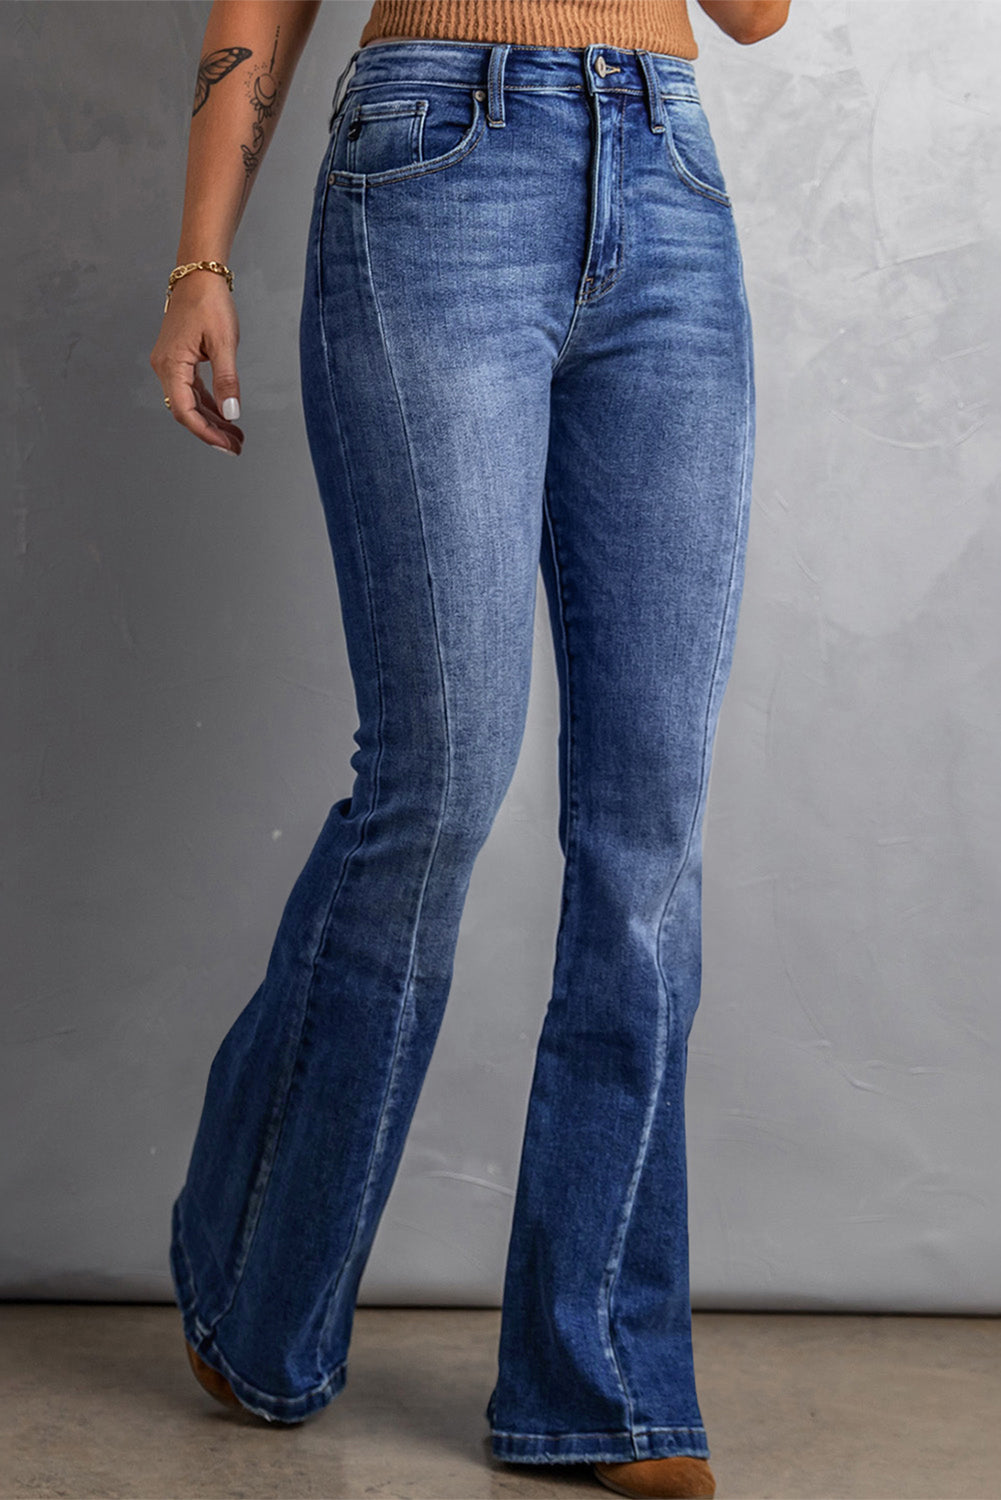 Dunkelblaue, ausgewaschene Flare-Jeans in Übergröße mit Nähten